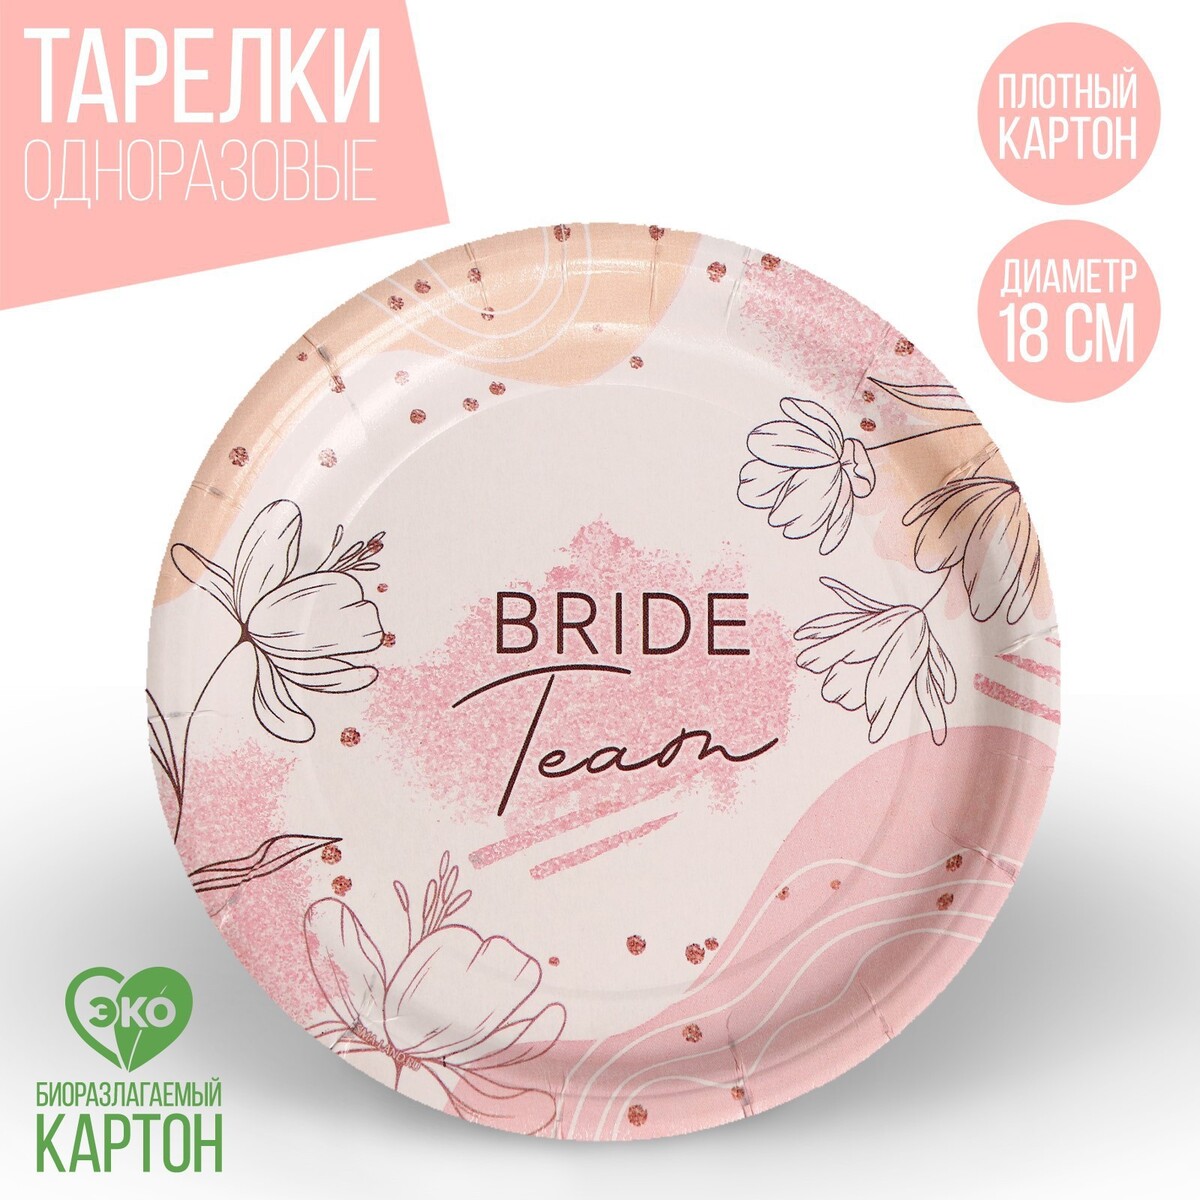 Тарелка одноразовая бумажная team bride, набор 6 шт, 18 см